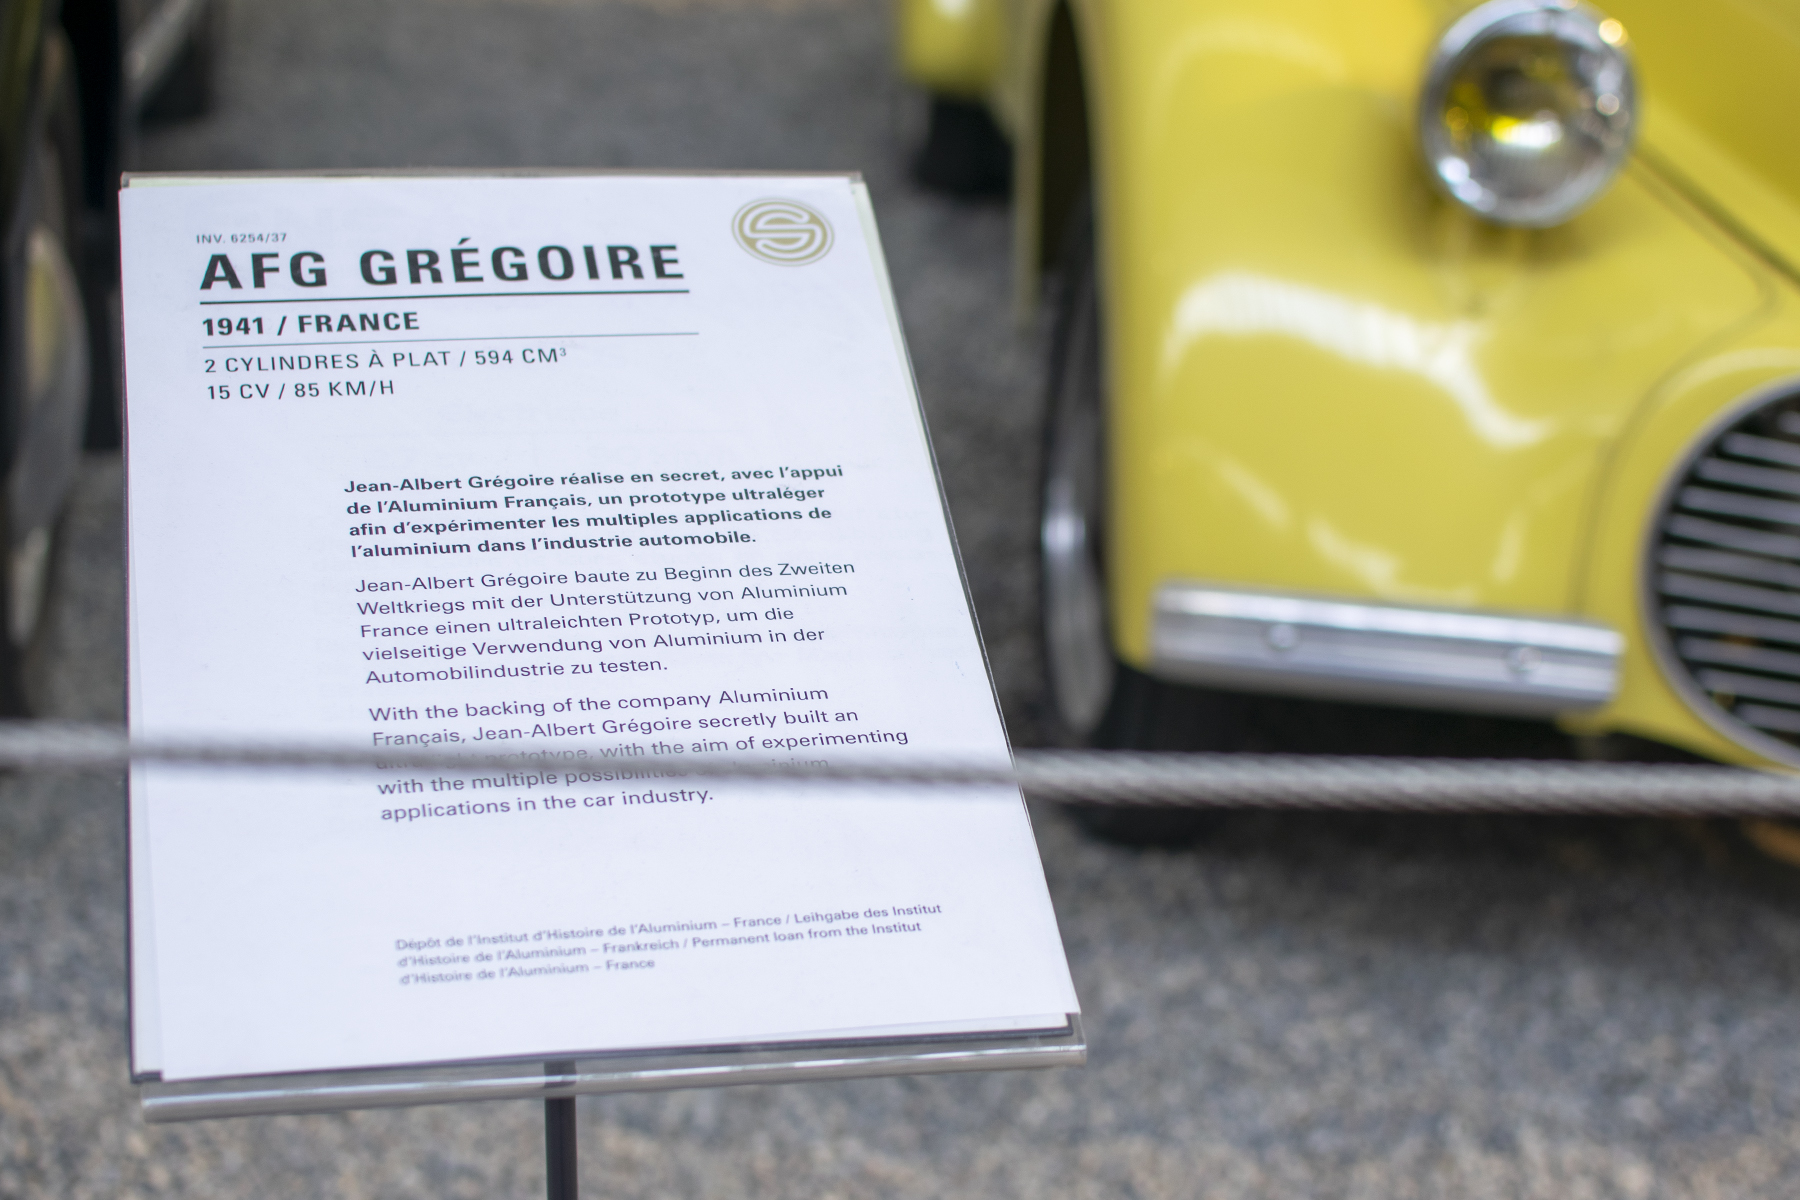 AFG Grégoire prototype 1941 details - Cité de l'automobile, Collection Schlumpf, Mulhouse, 2020